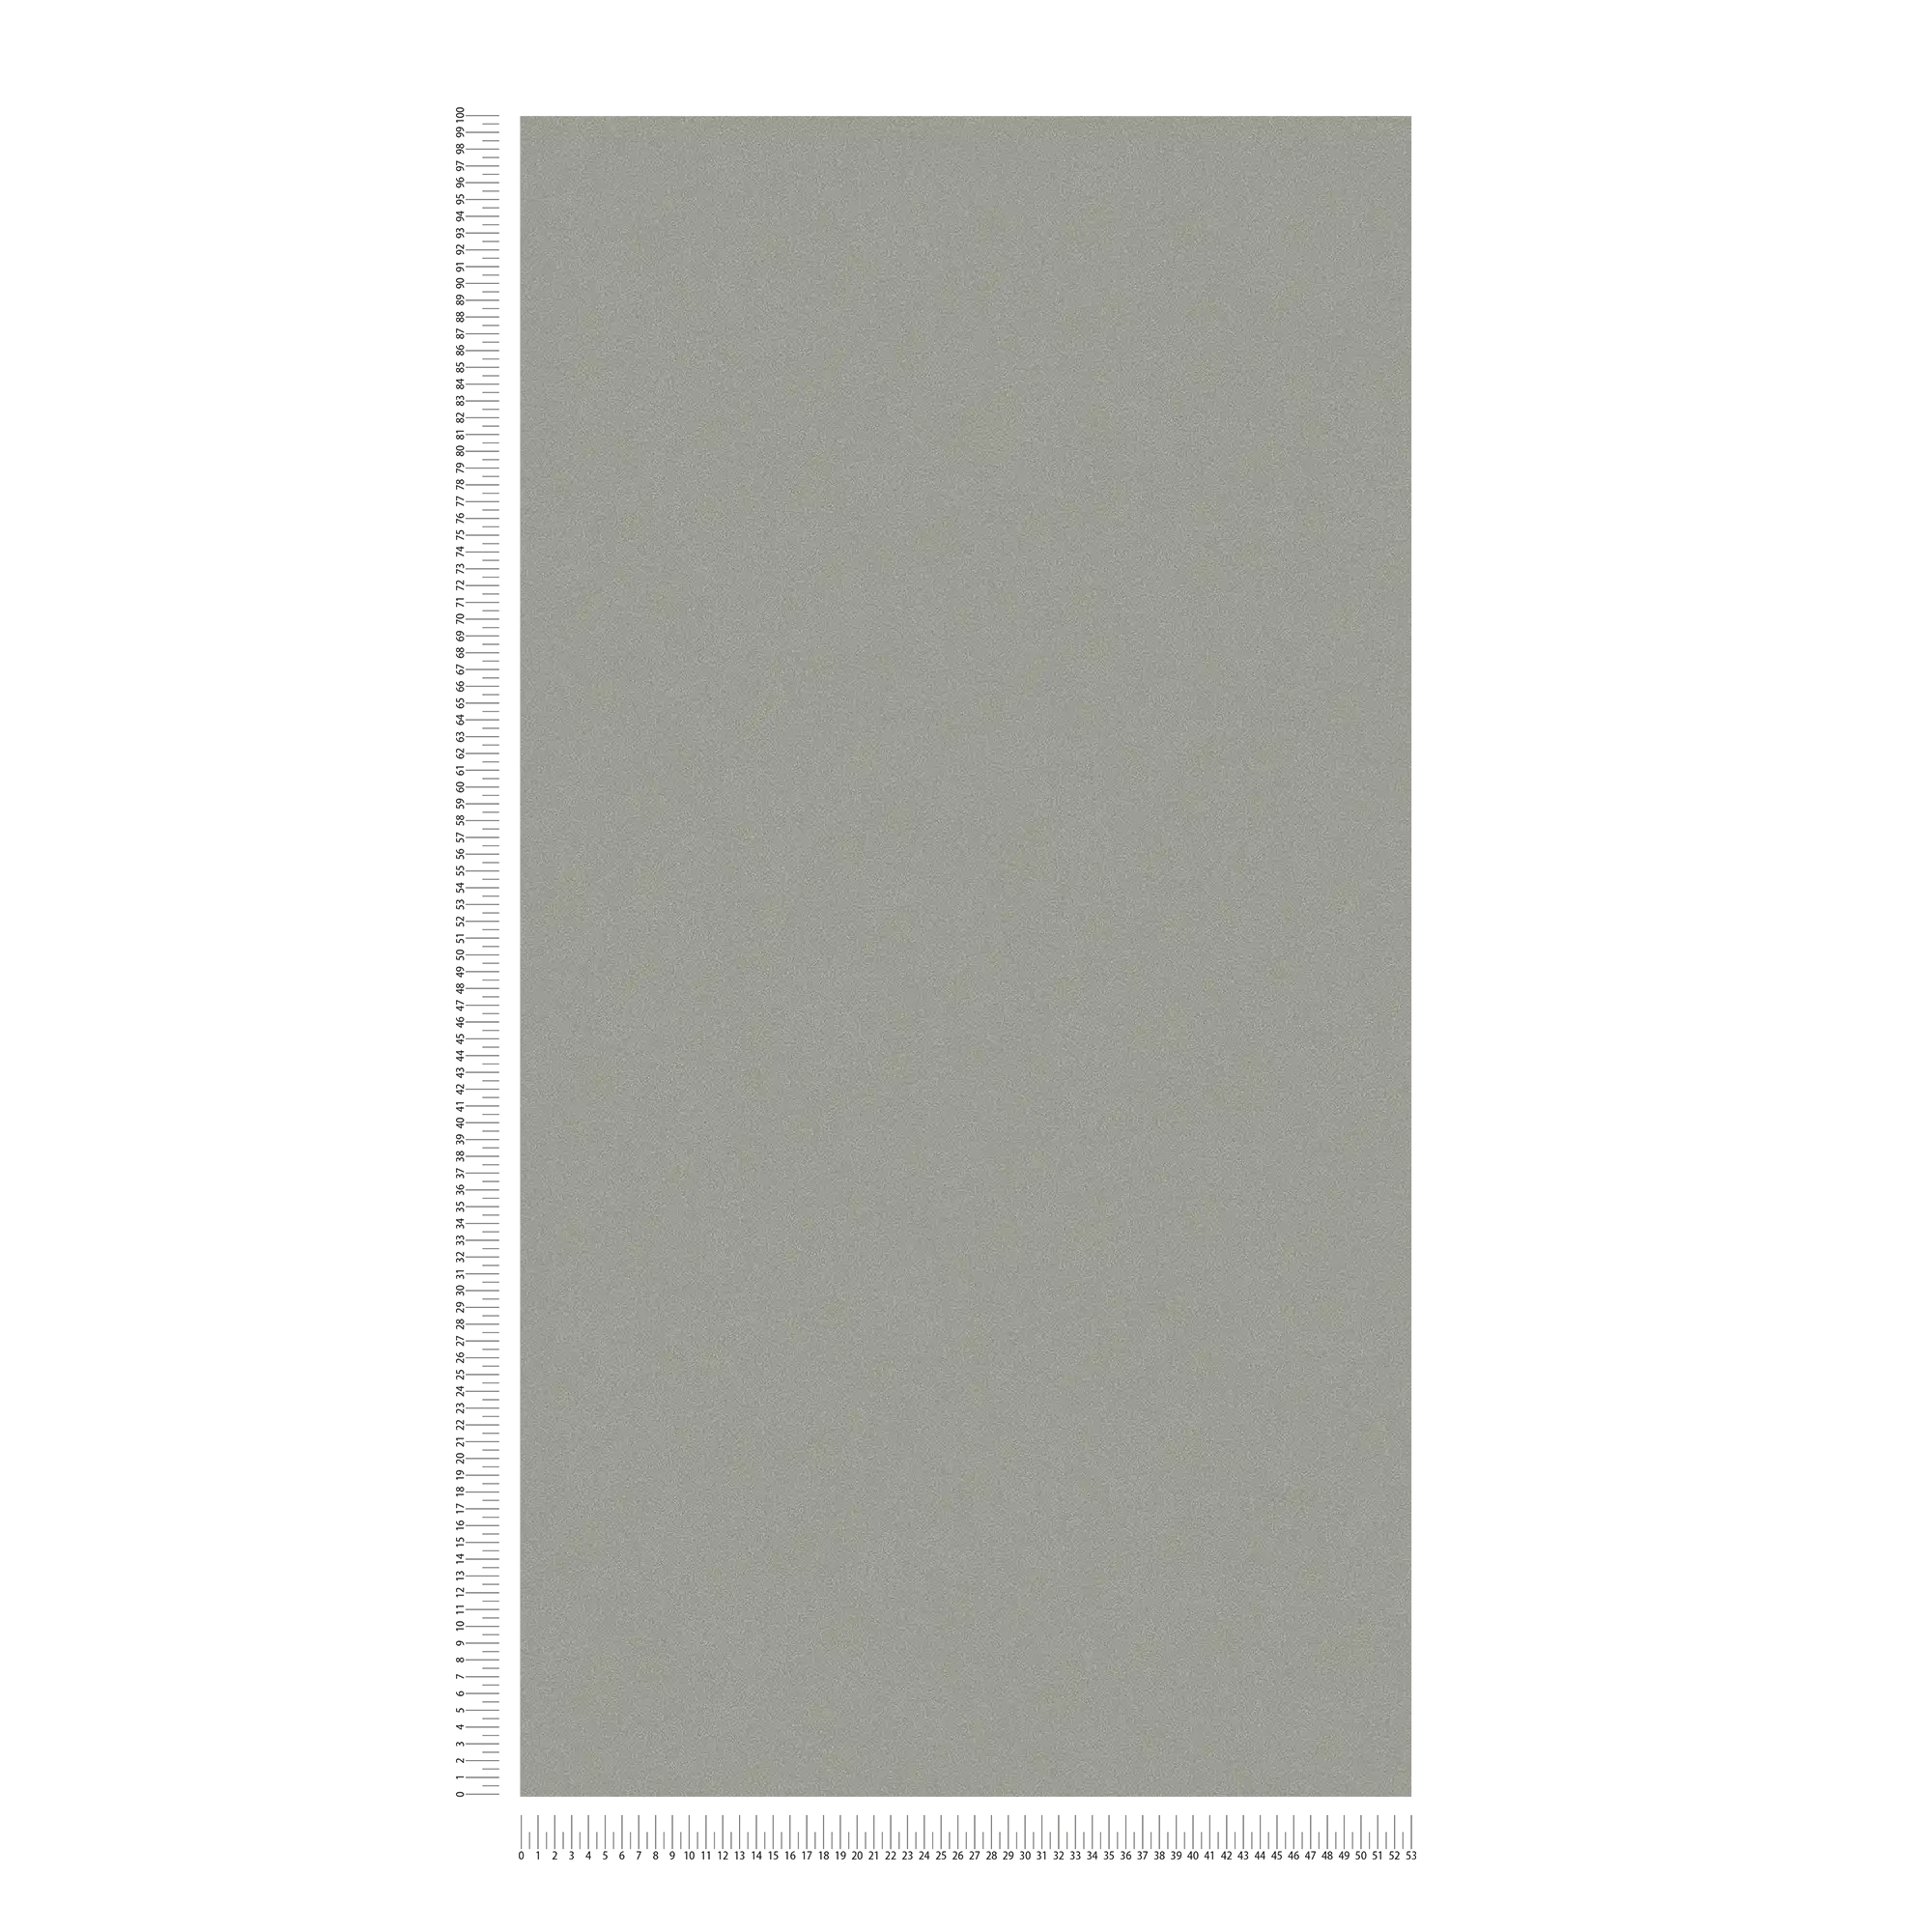             Vliesbehang donker grijs met mat oppervlak & kleur arceringen
        